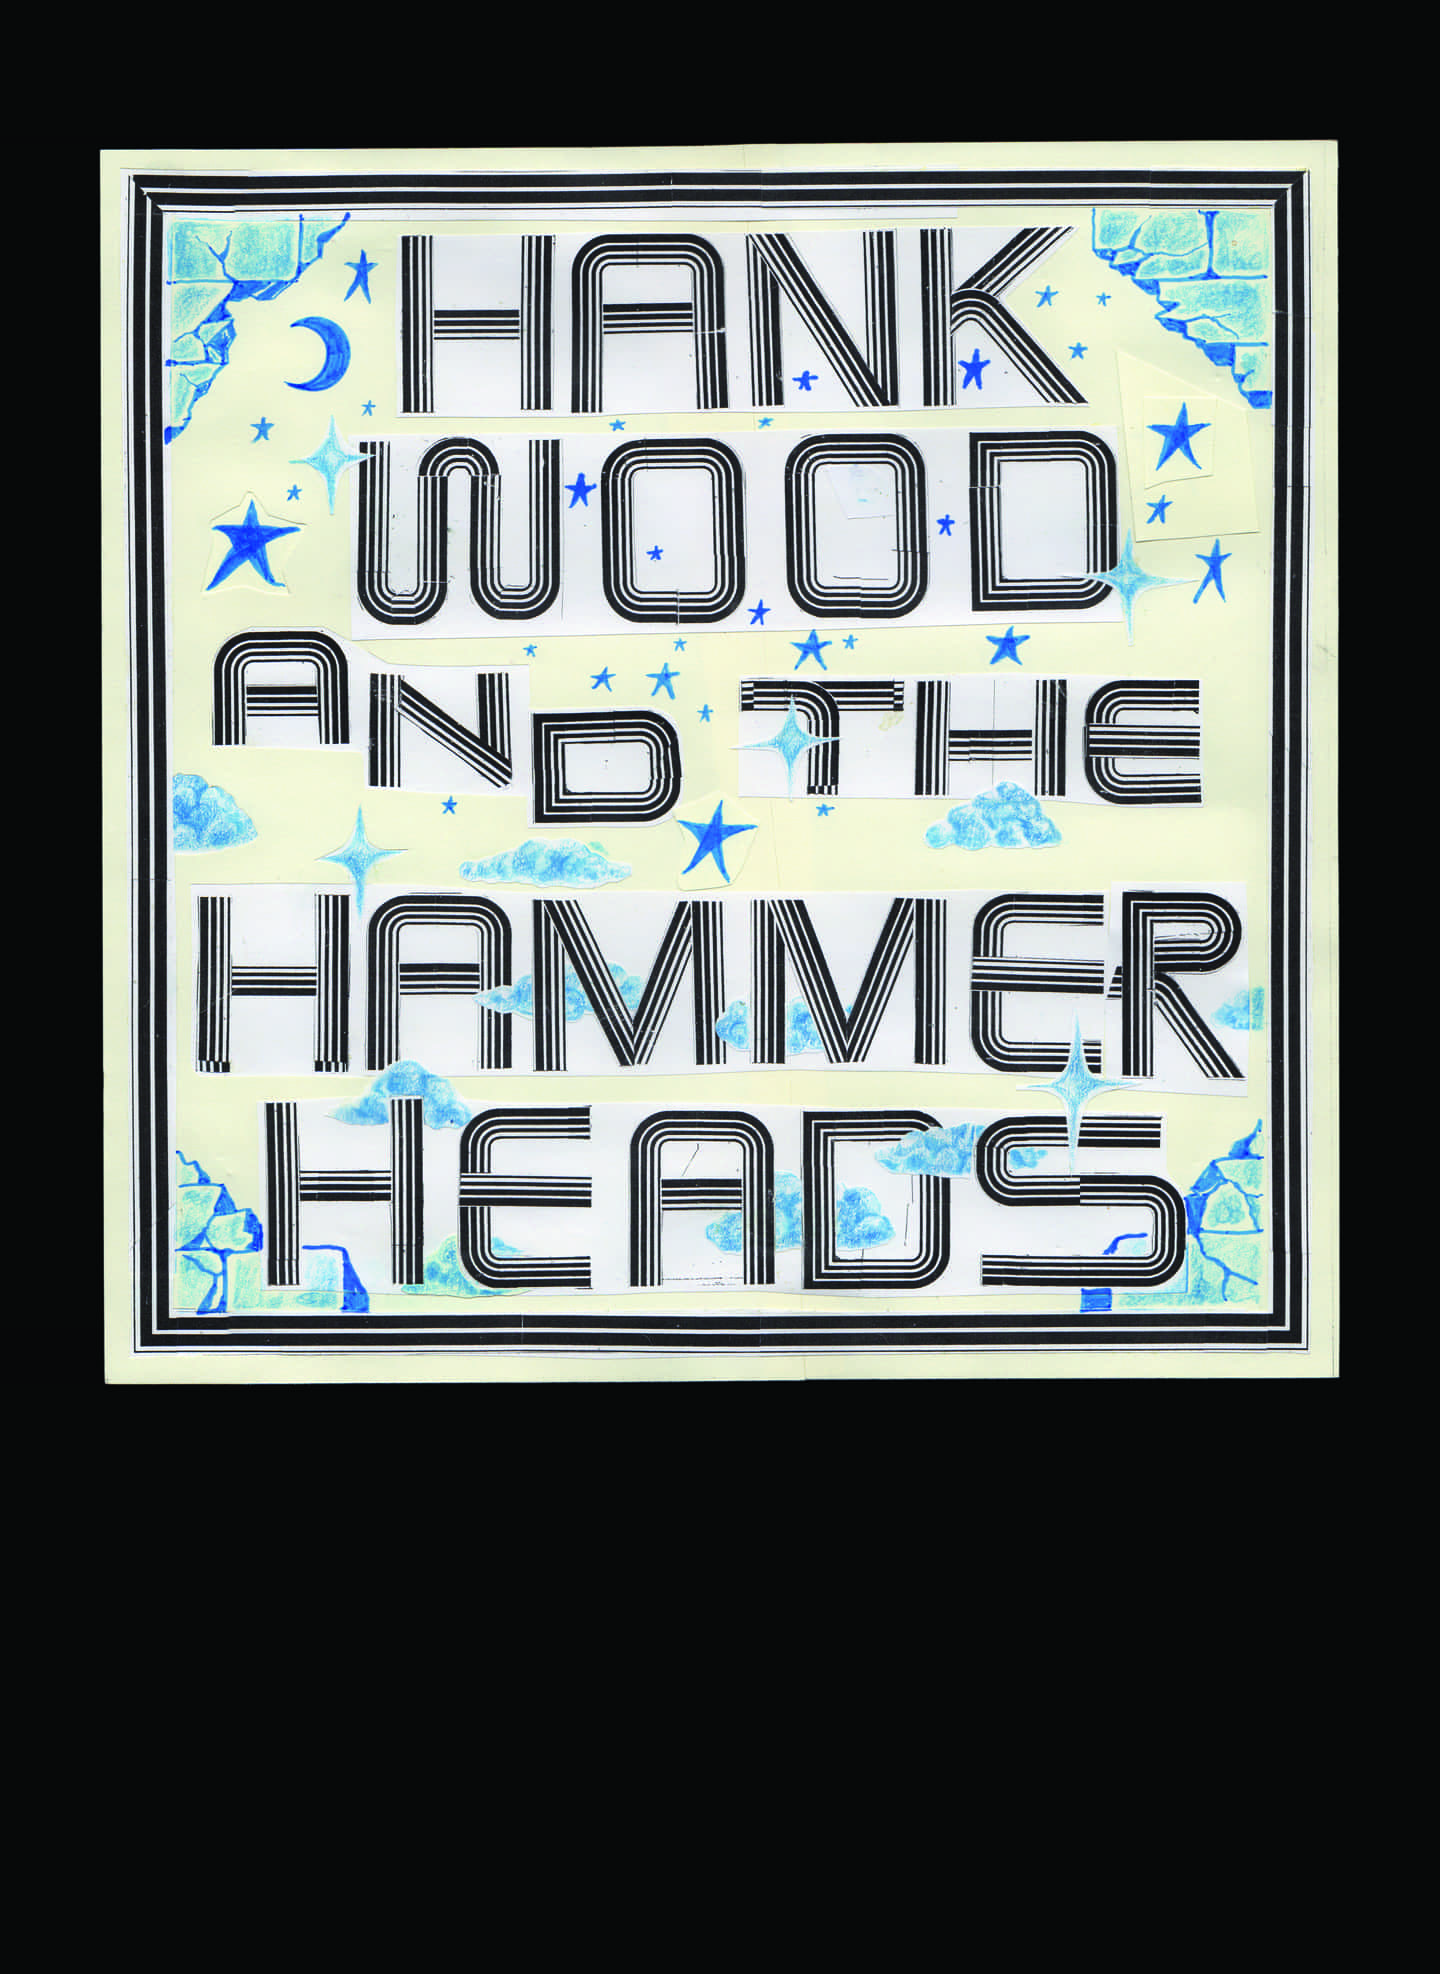 Sam Ryser: Hank madera y los Hammer Heads